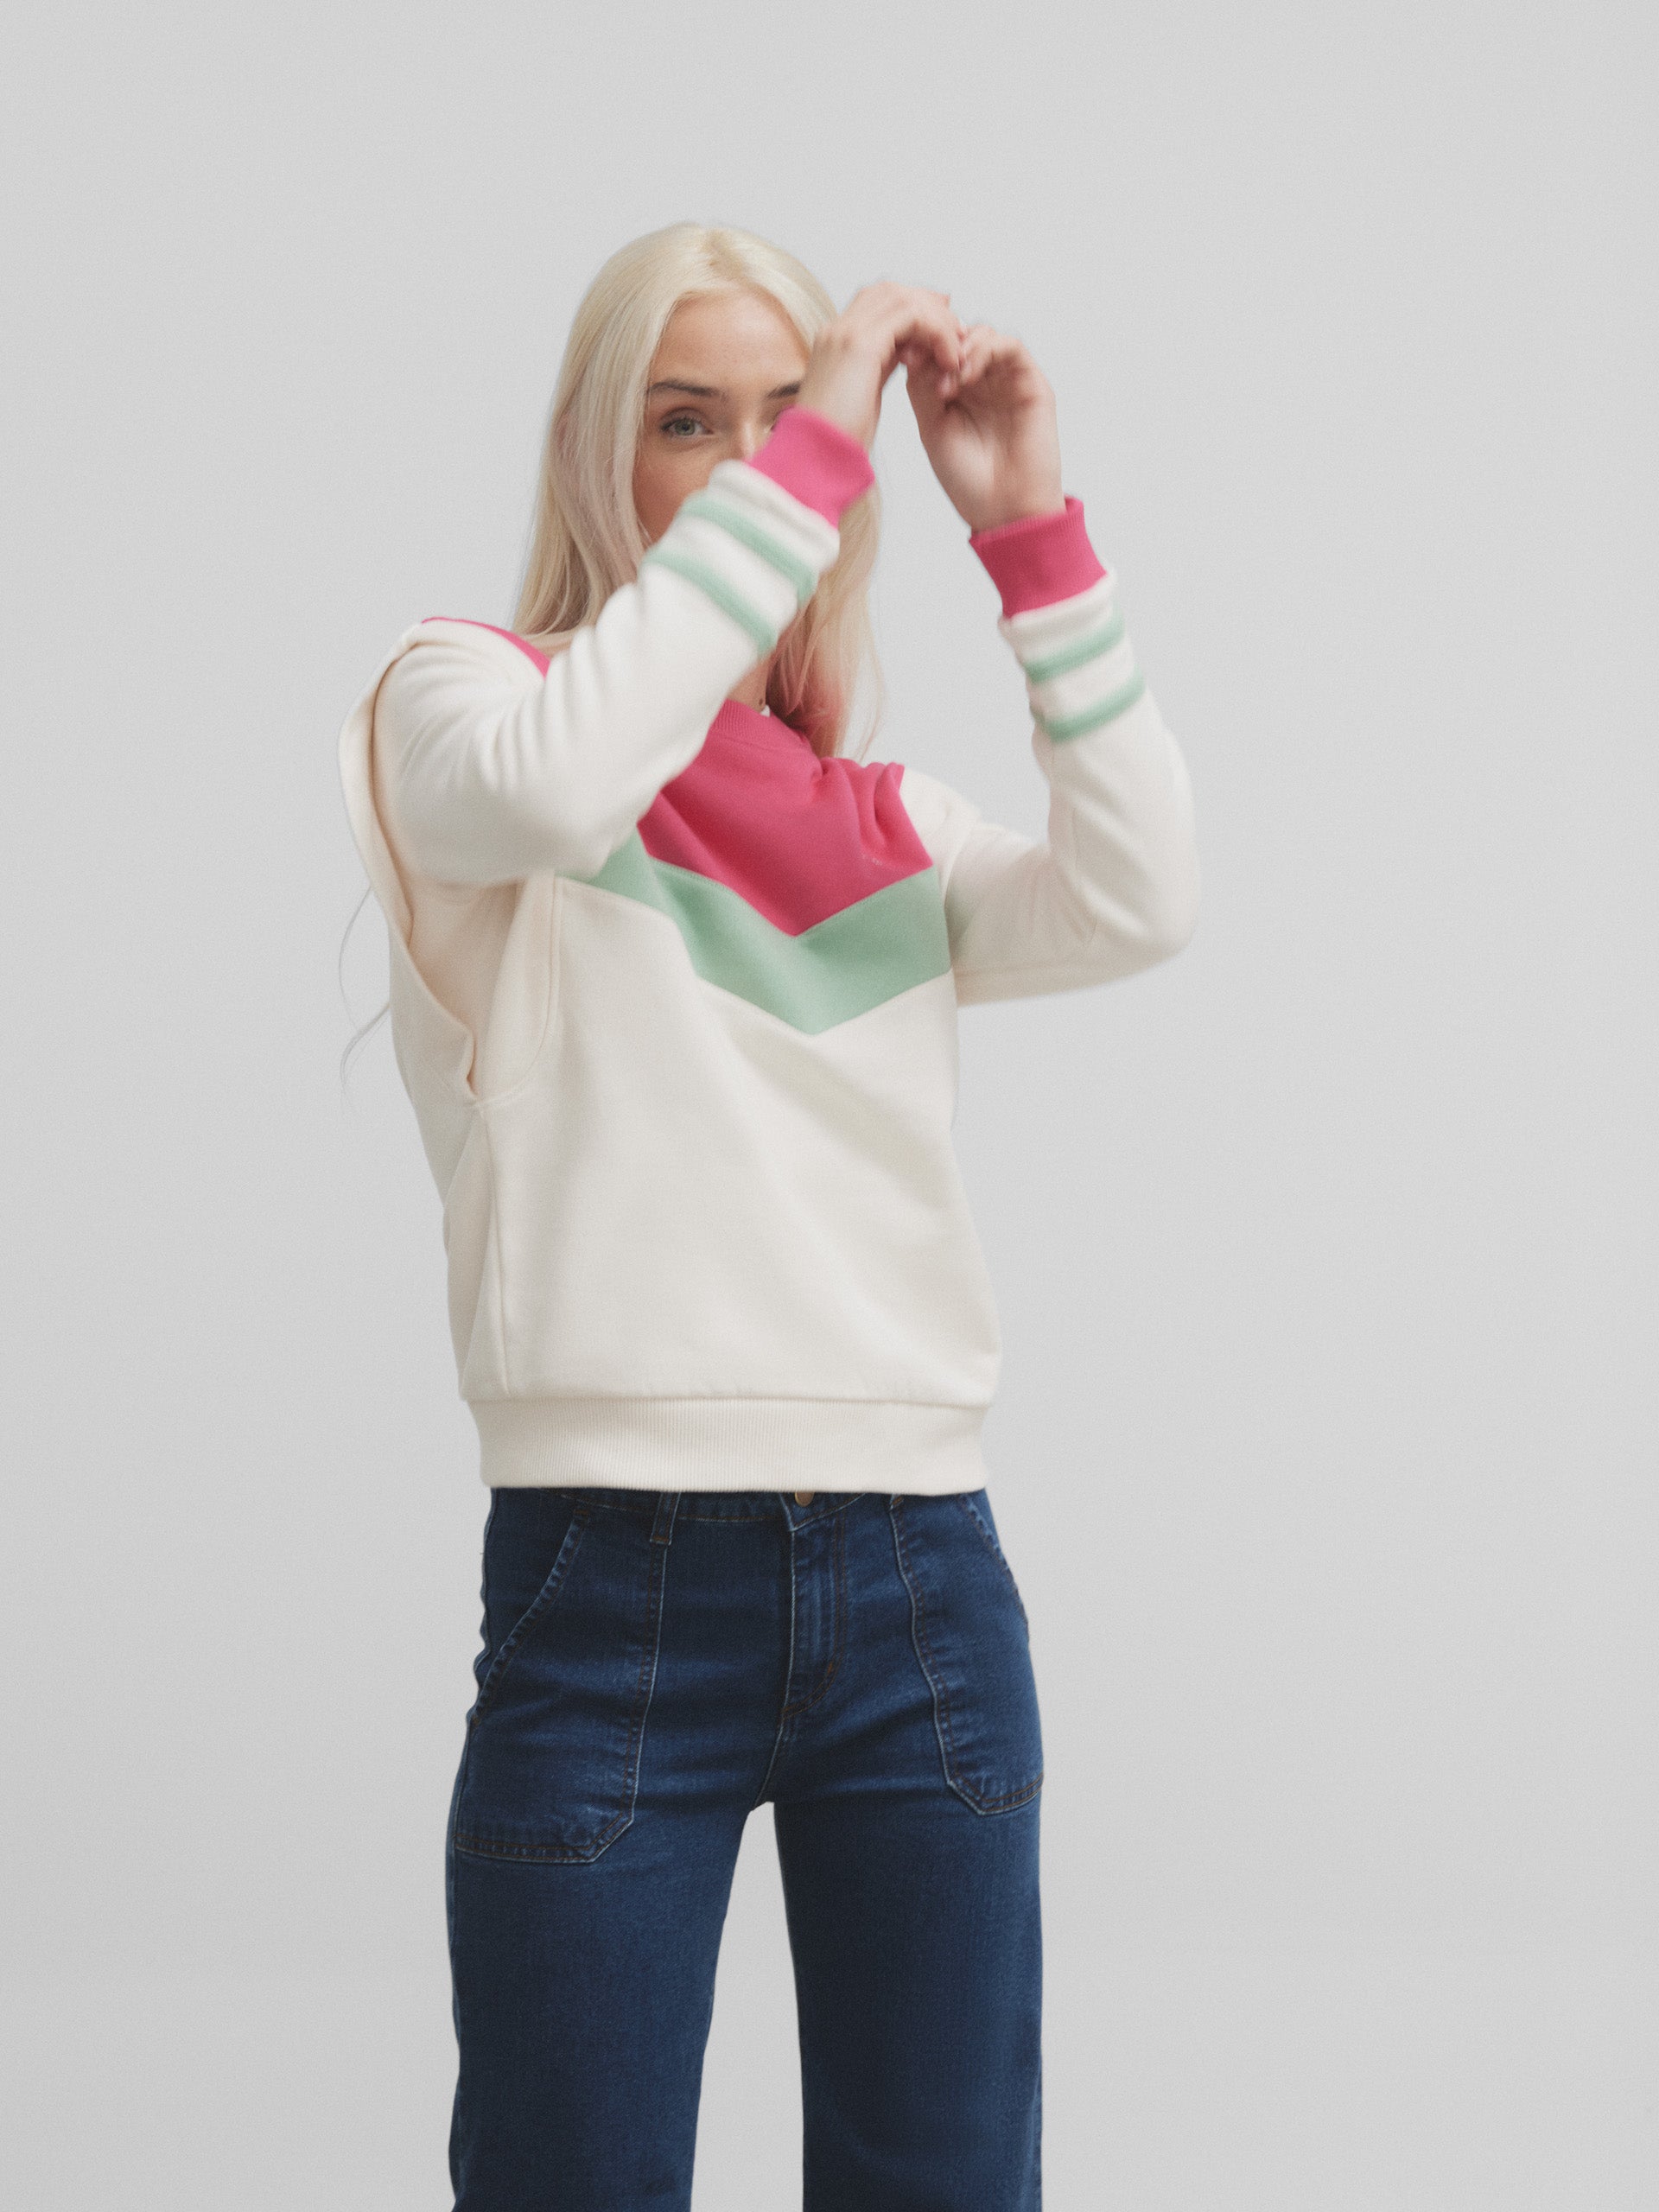 Women's pink tricolor shoulder pads sweatshirt